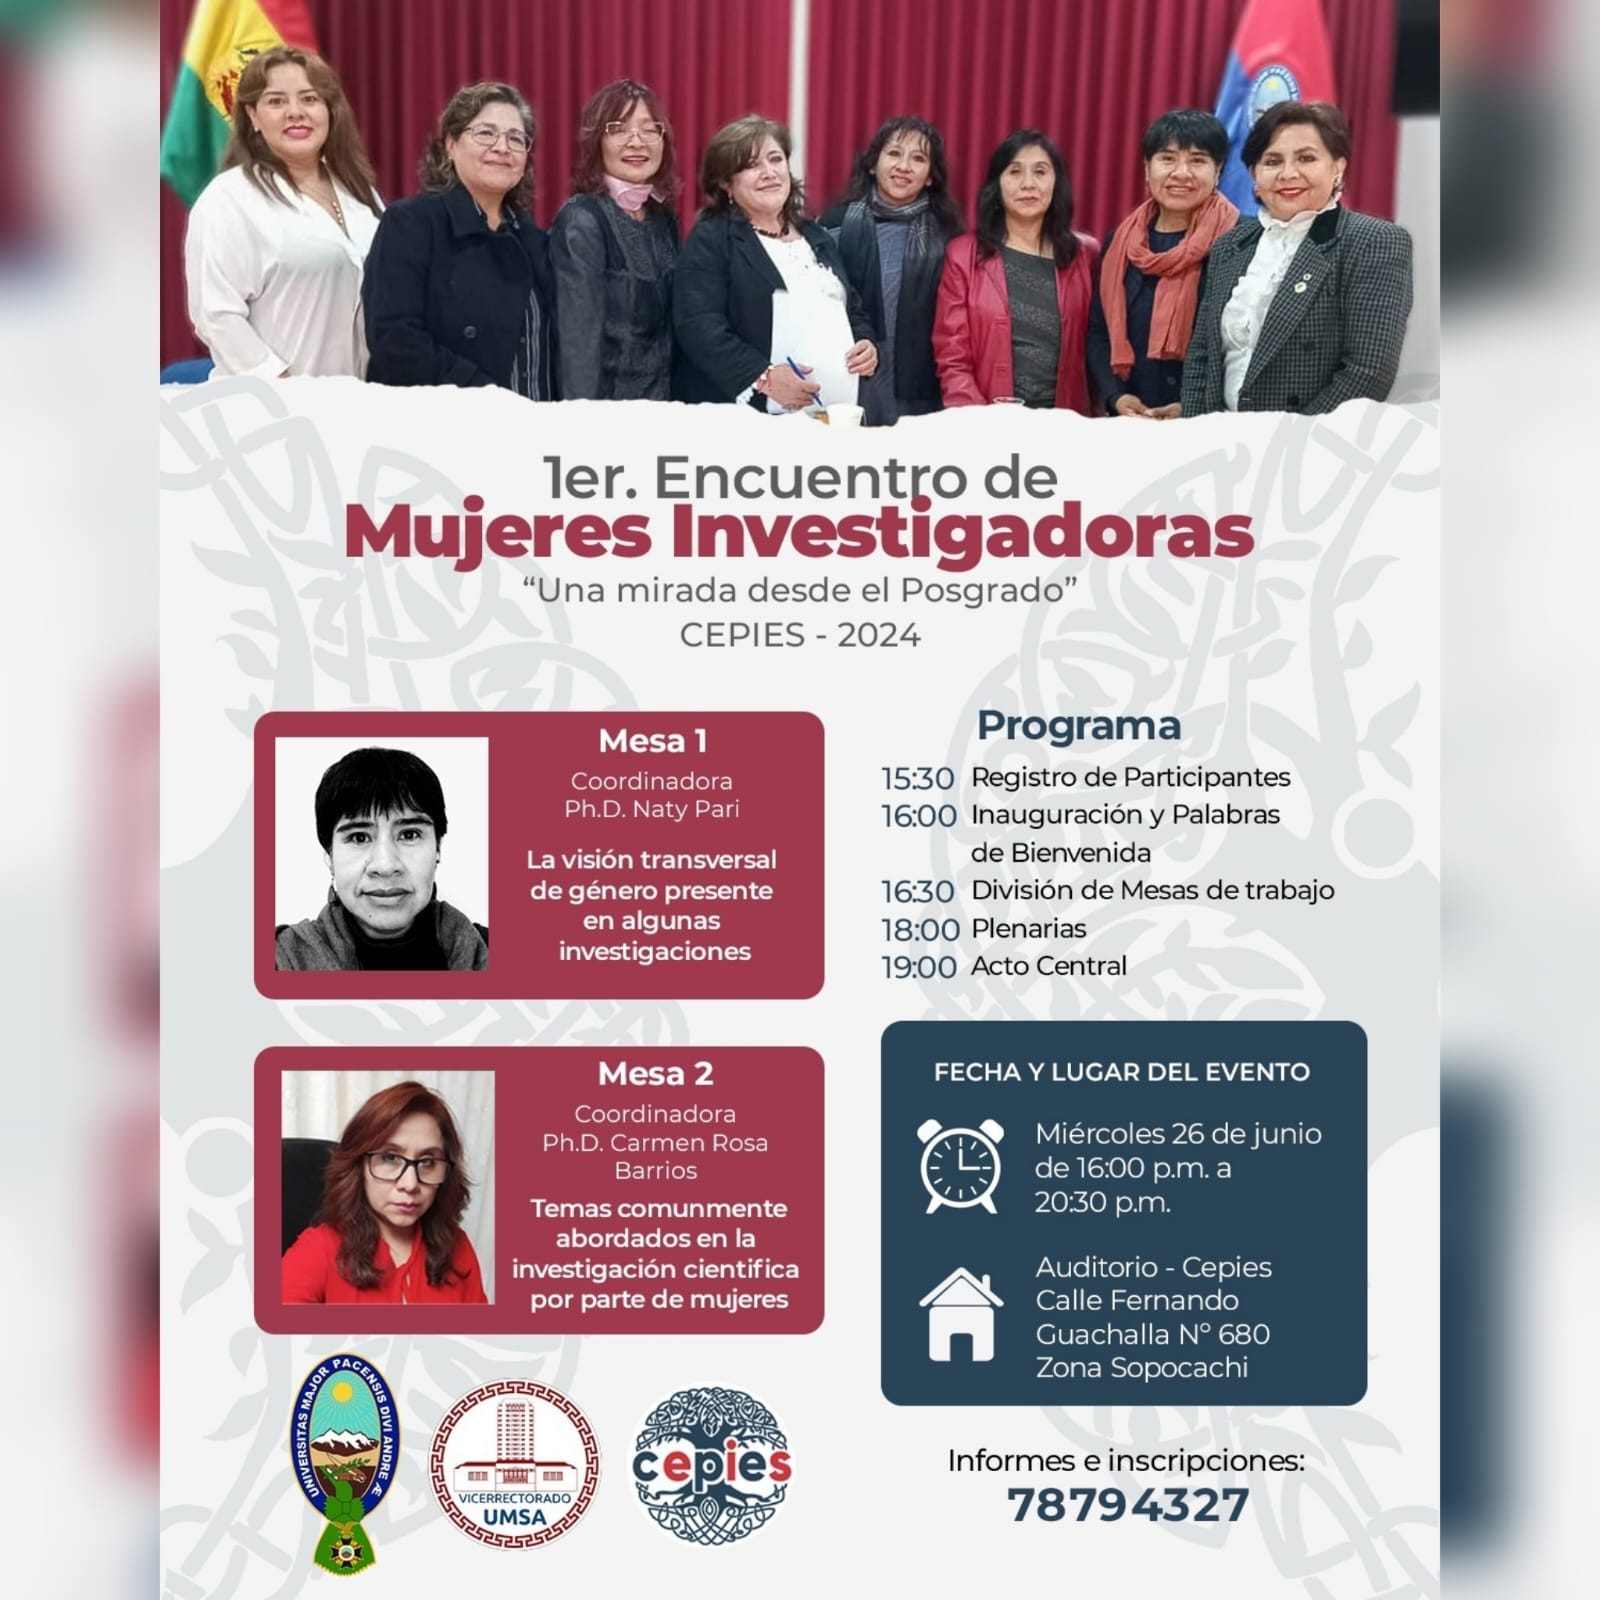 1er. Encuentro de Mujeres Investigadoras 